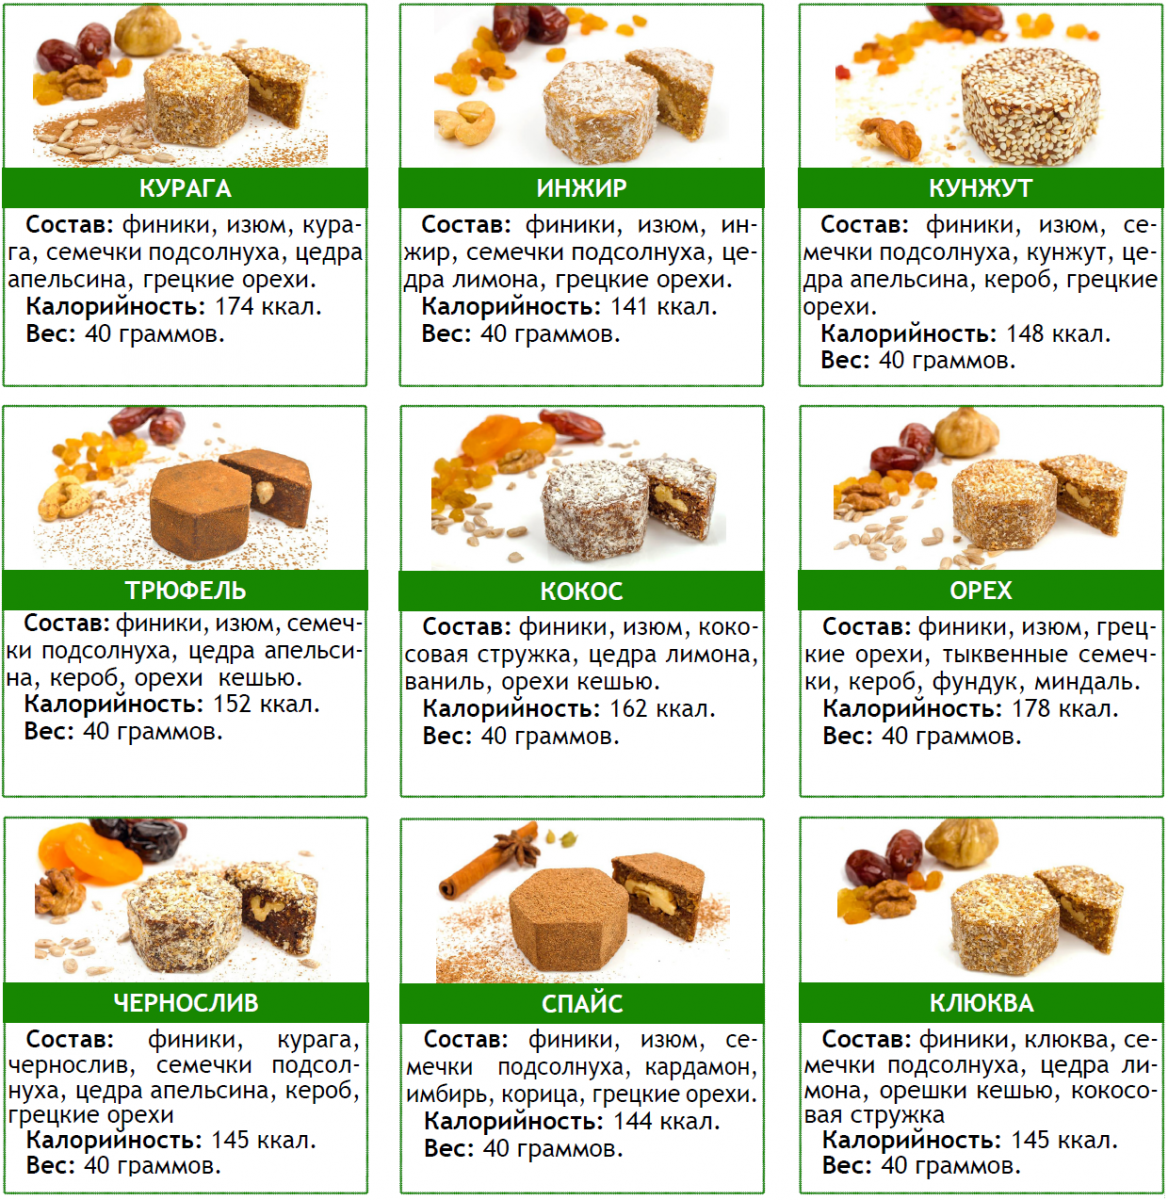 Таблица калорийности разных видов орехов